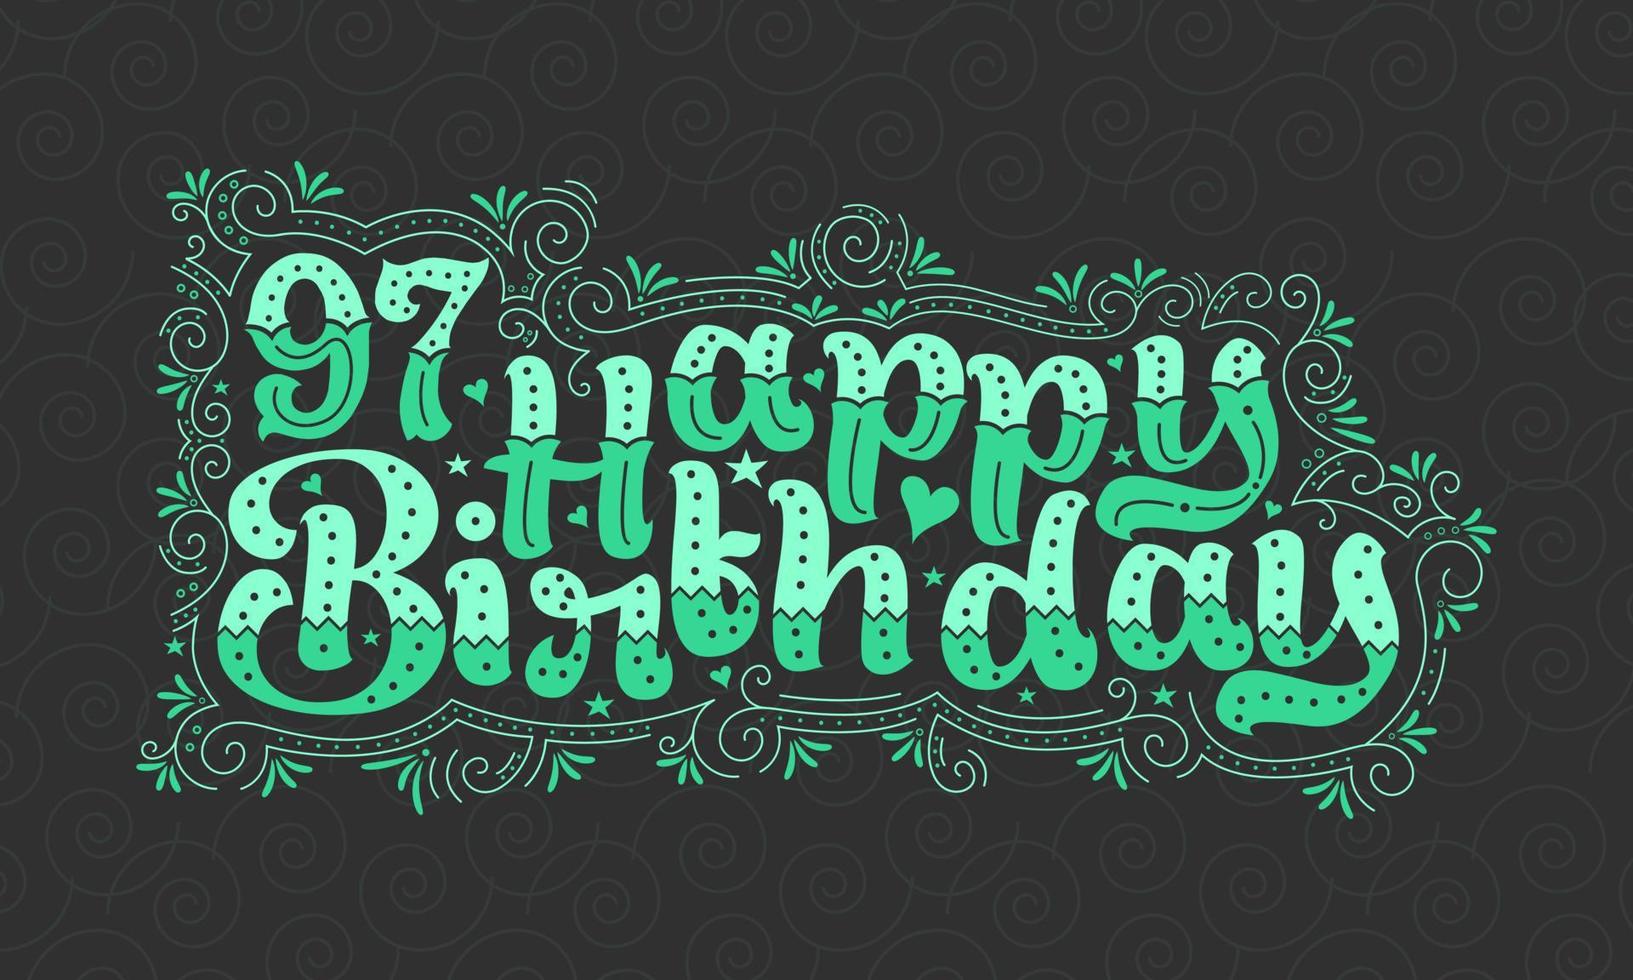 97:e grattis på födelsedagen bokstäver, 97 års födelsedag vacker typografidesign med gröna prickar, linjer och löv. vektor